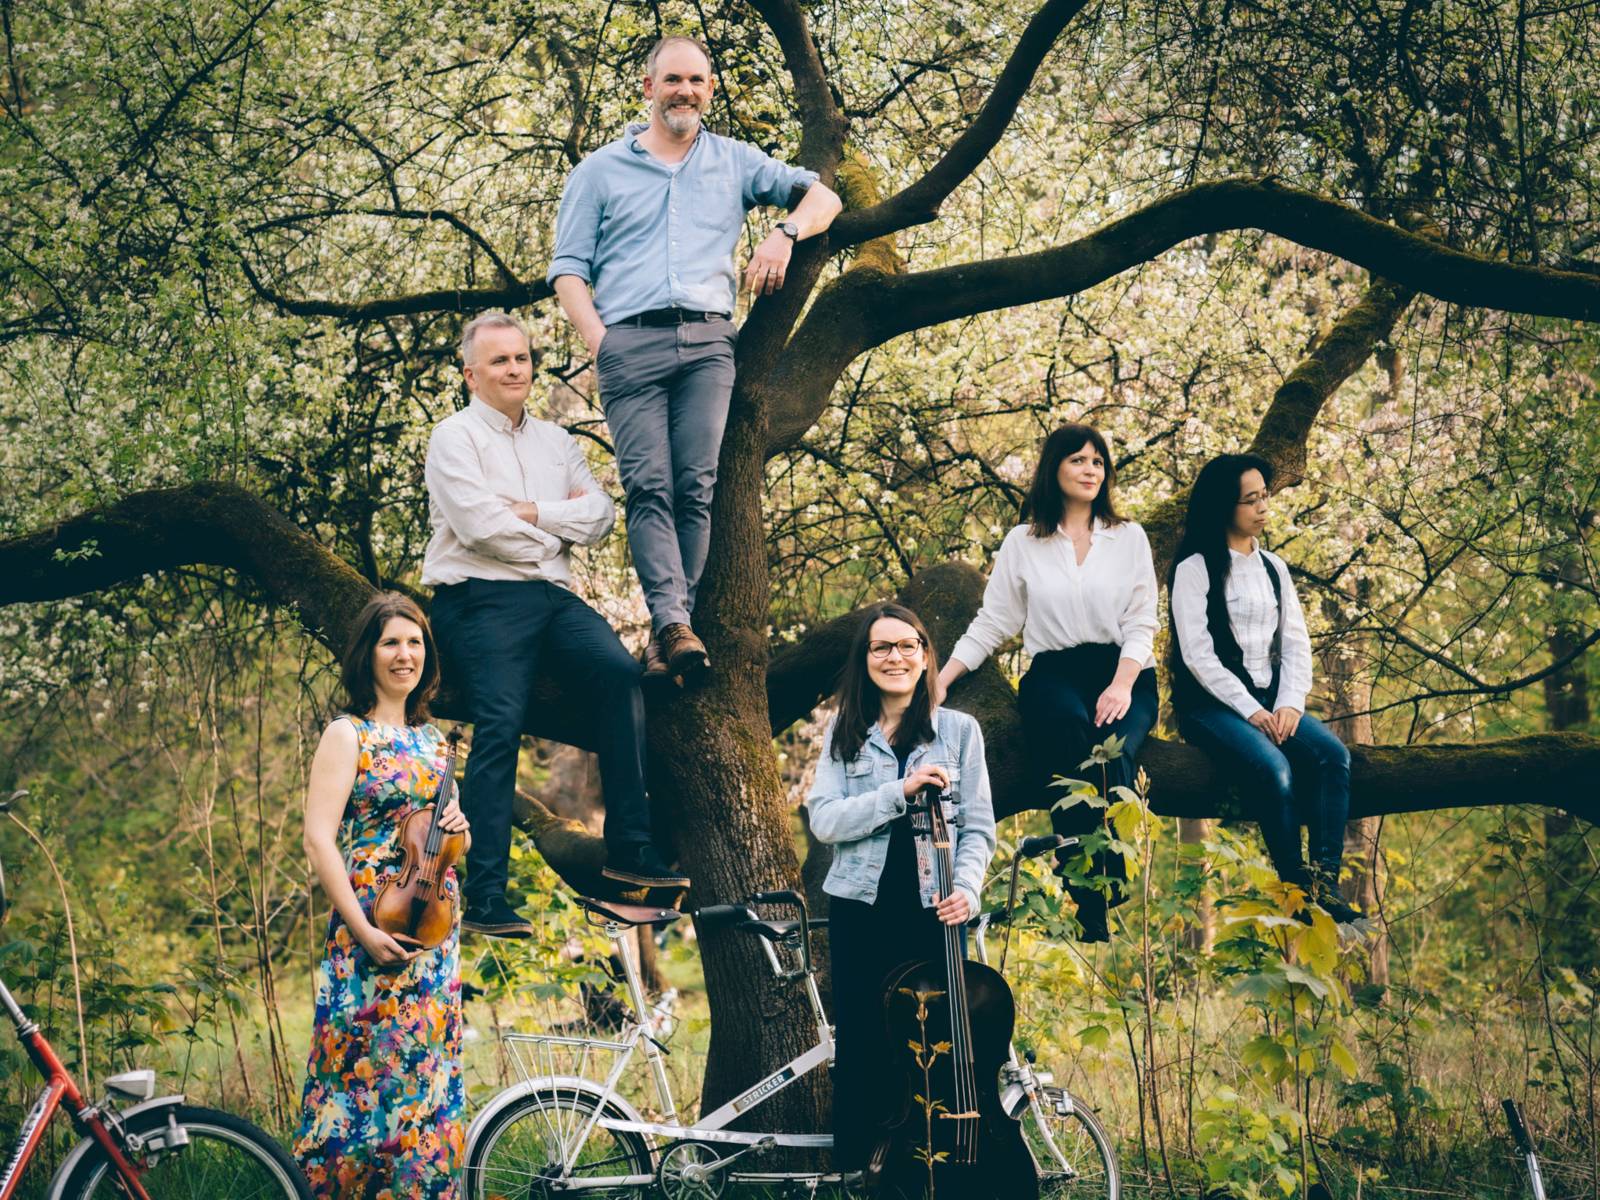 Vier Frauen und zwei Männer haben sich vor einem Baum und dessen Ästen verteilt. Im Bild sind außerdem Fahrräder und Musikinstrumente.